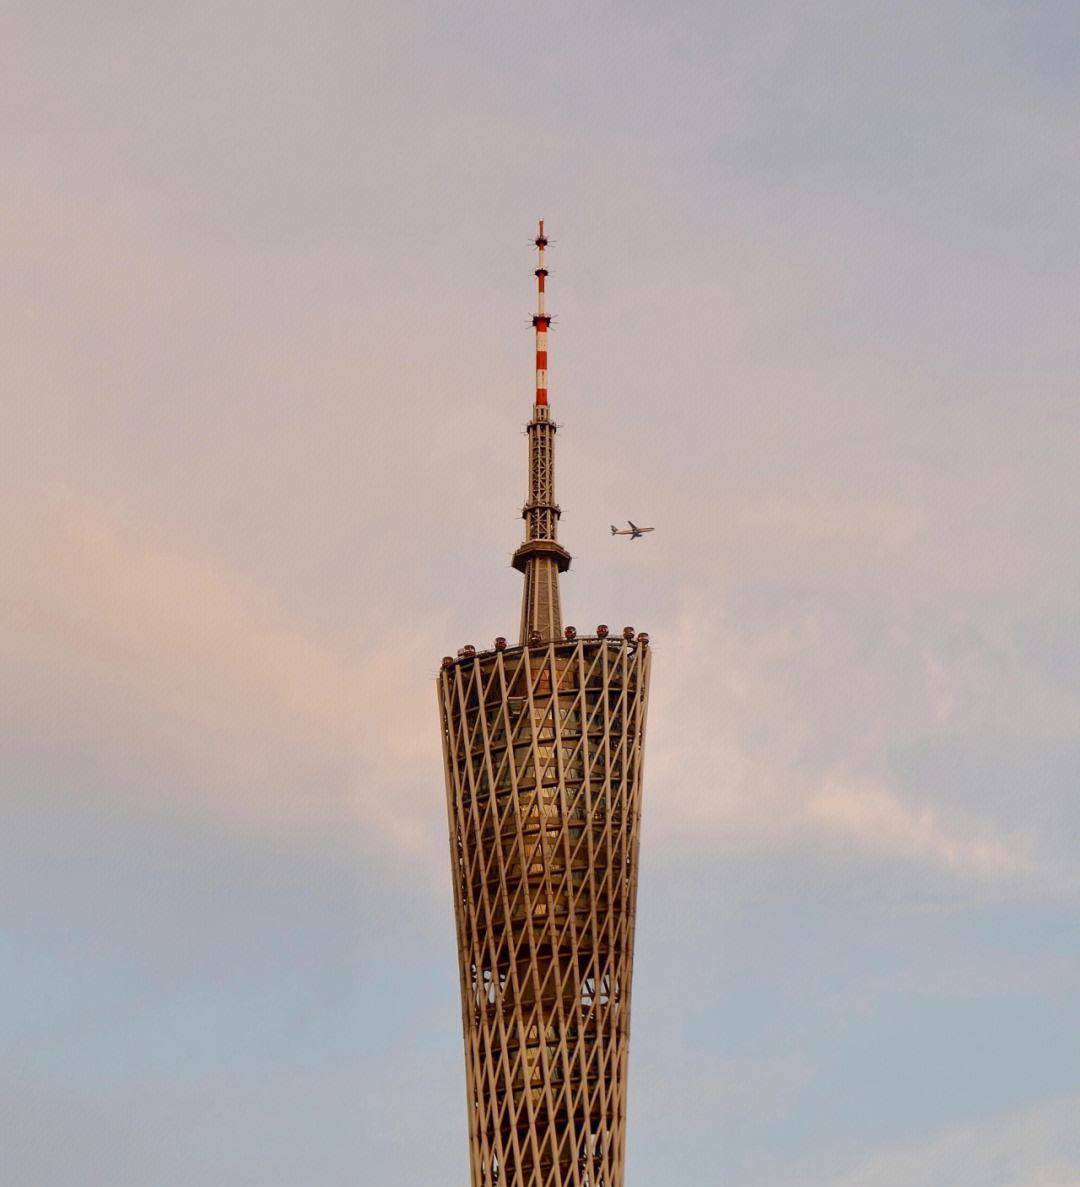 廣州市的一座標志性建筑和旅游景點，是世界第四高的電視塔 